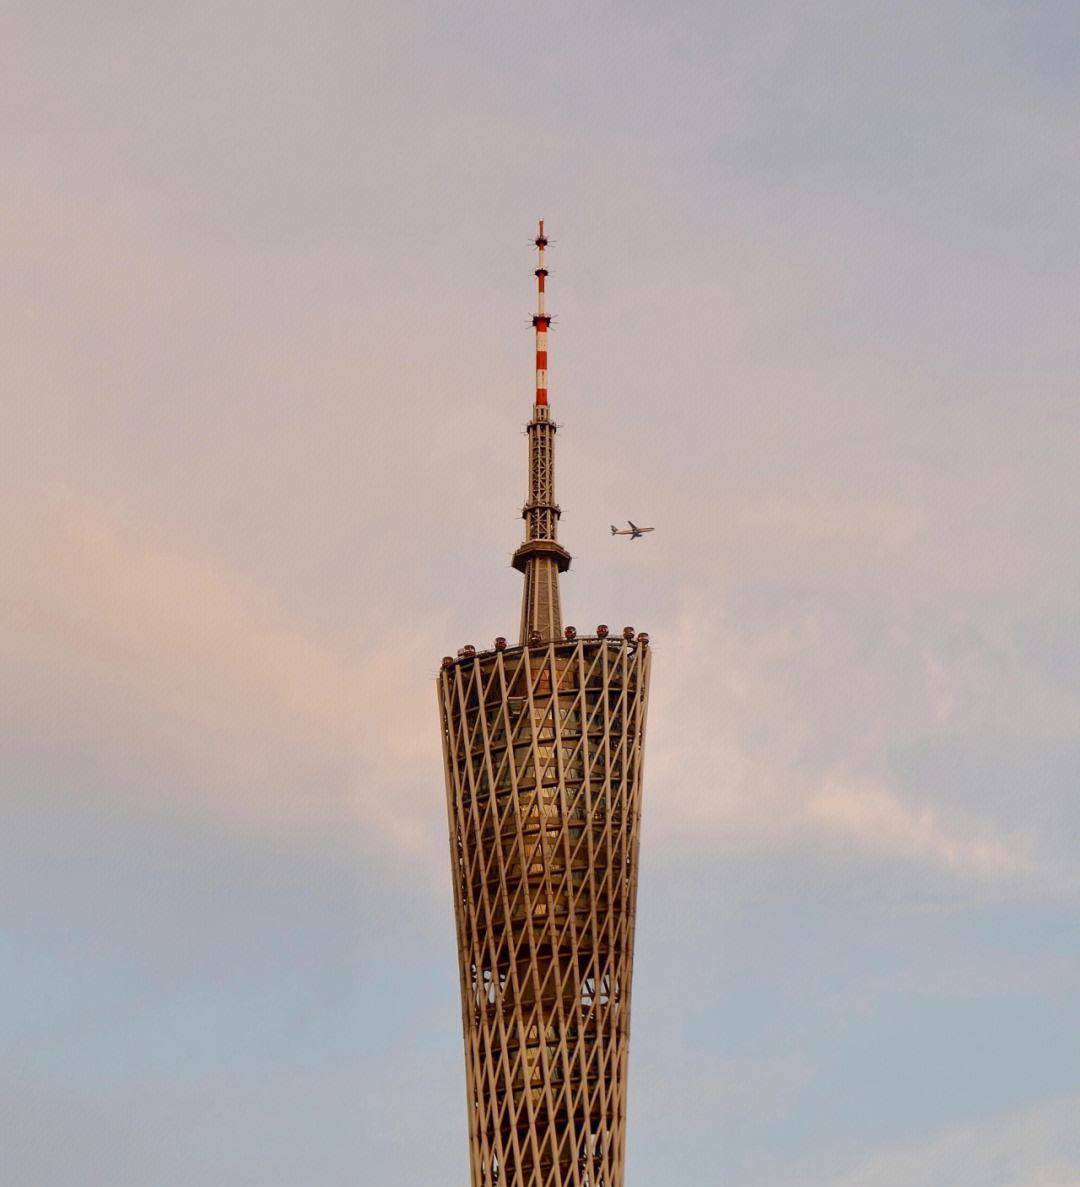 廣州市的一座標志性建筑和旅游景點，是世界第四高的電視塔 